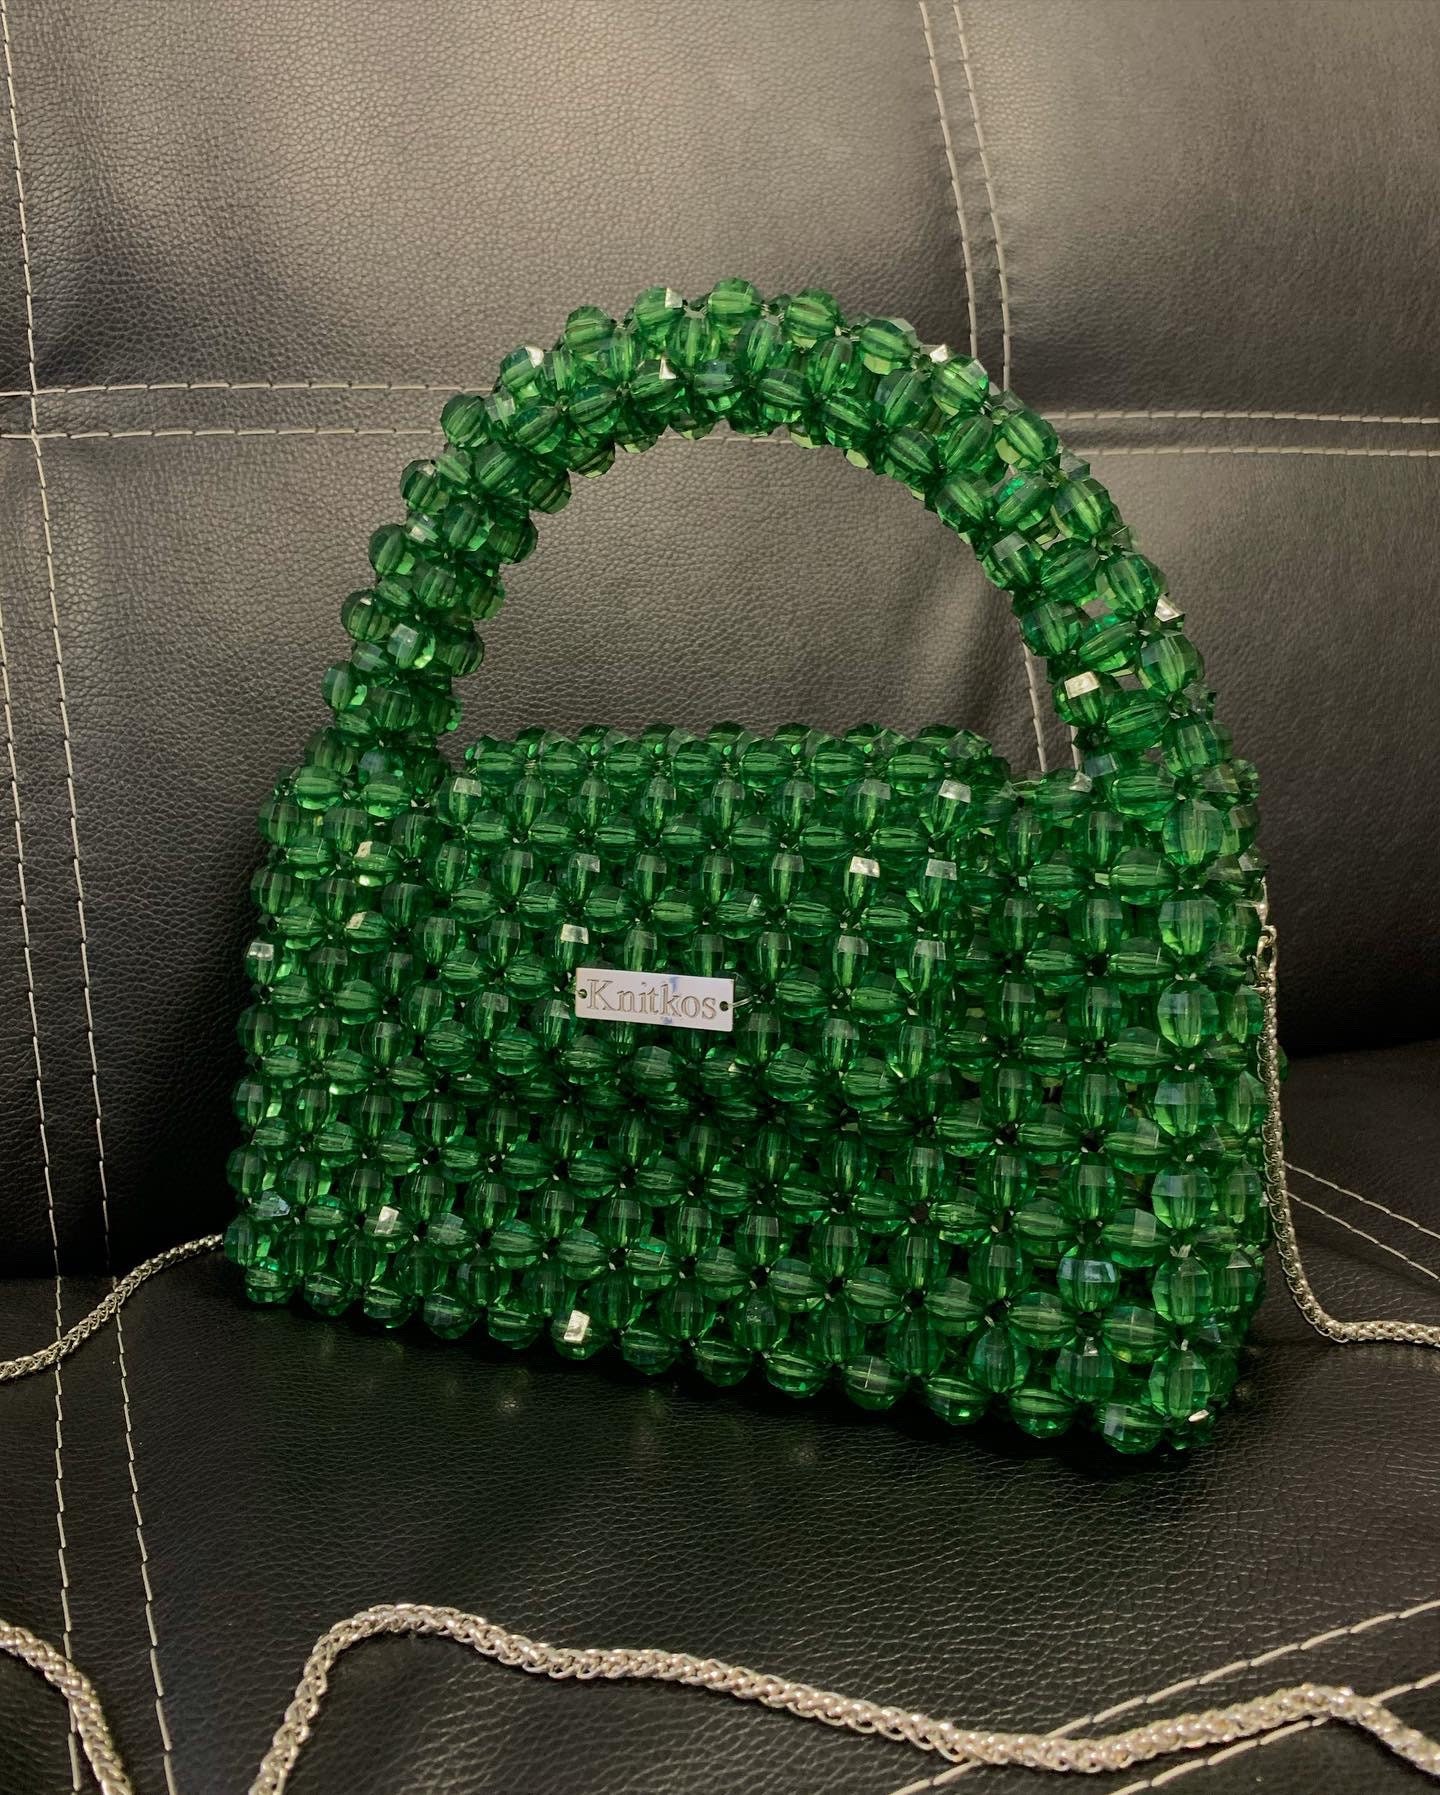 Crystal Green Bead Bag, Bead Shoulder Bag, KNITKOS Bead Bag, Bead Bag ...